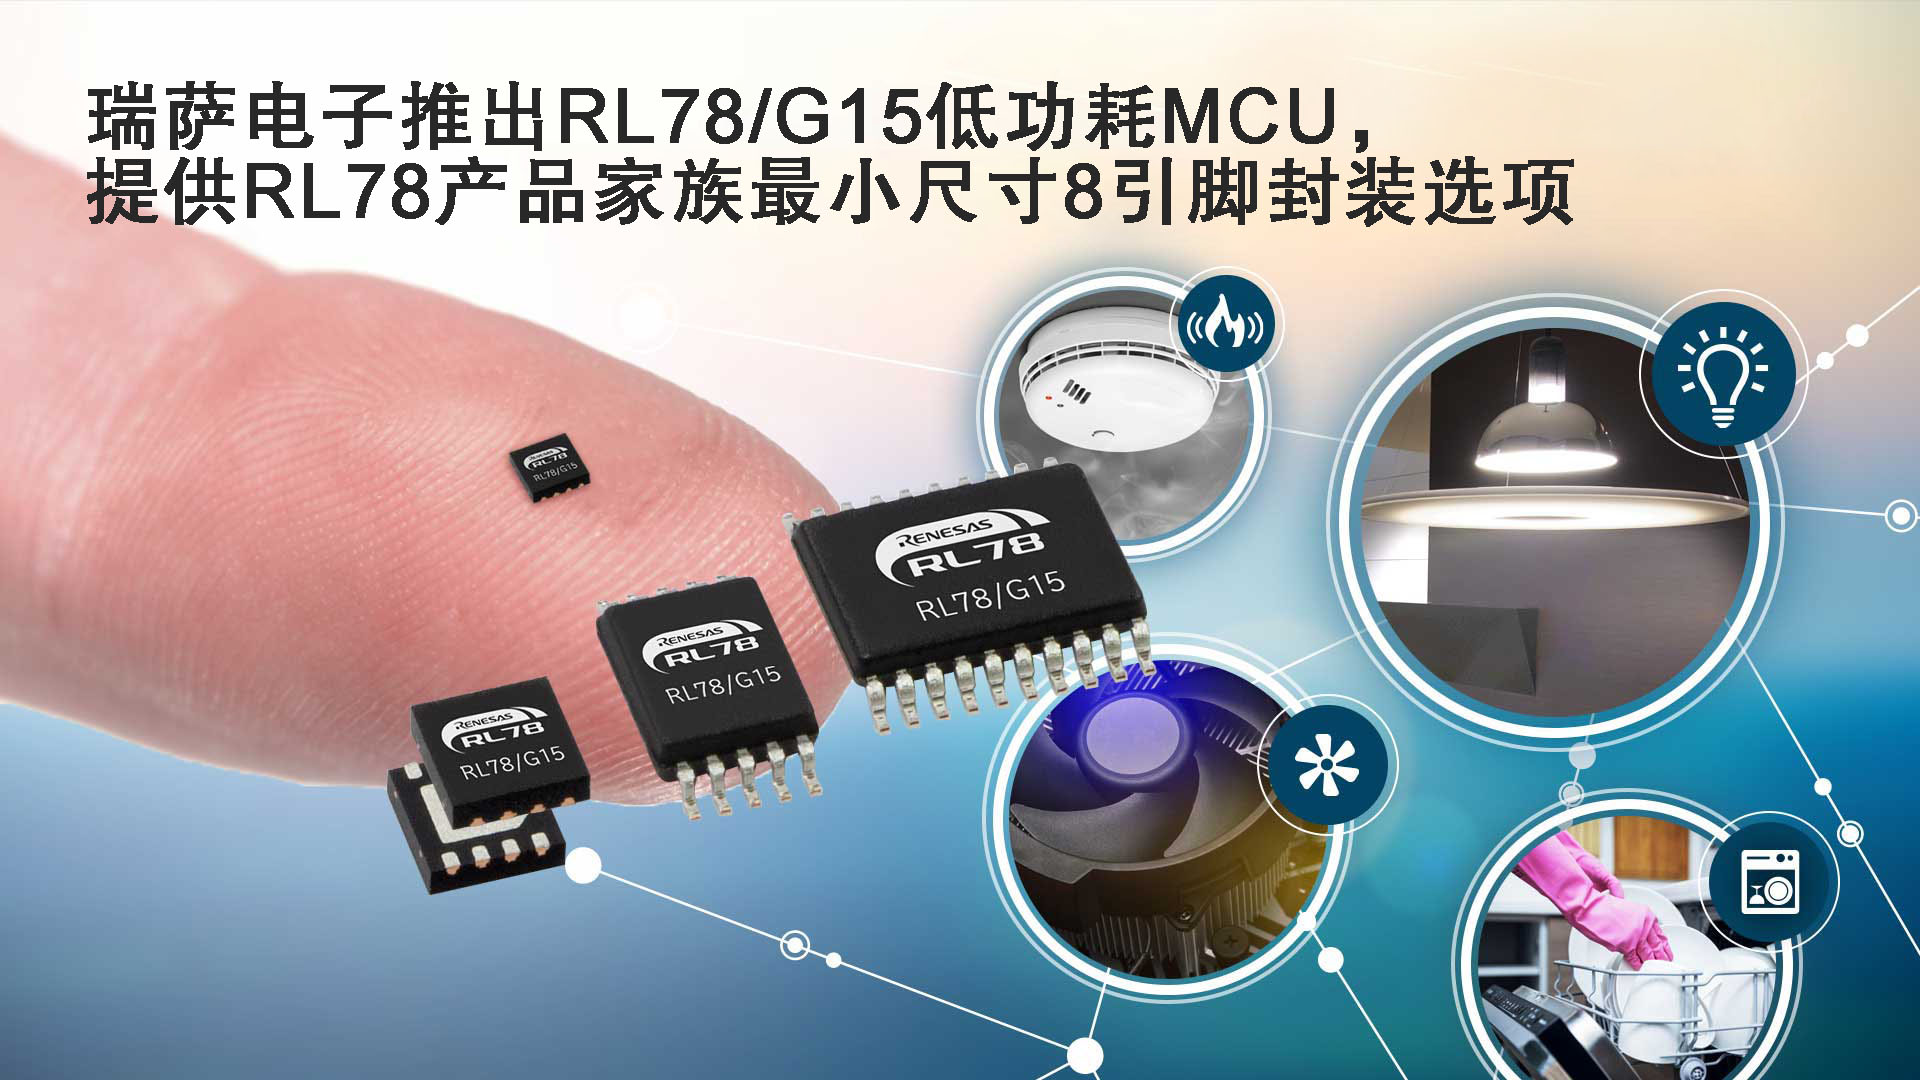 瑞萨电子推出RL78/G15低功耗MCU,提供RL78产品家族最小尺寸8引脚封装选项